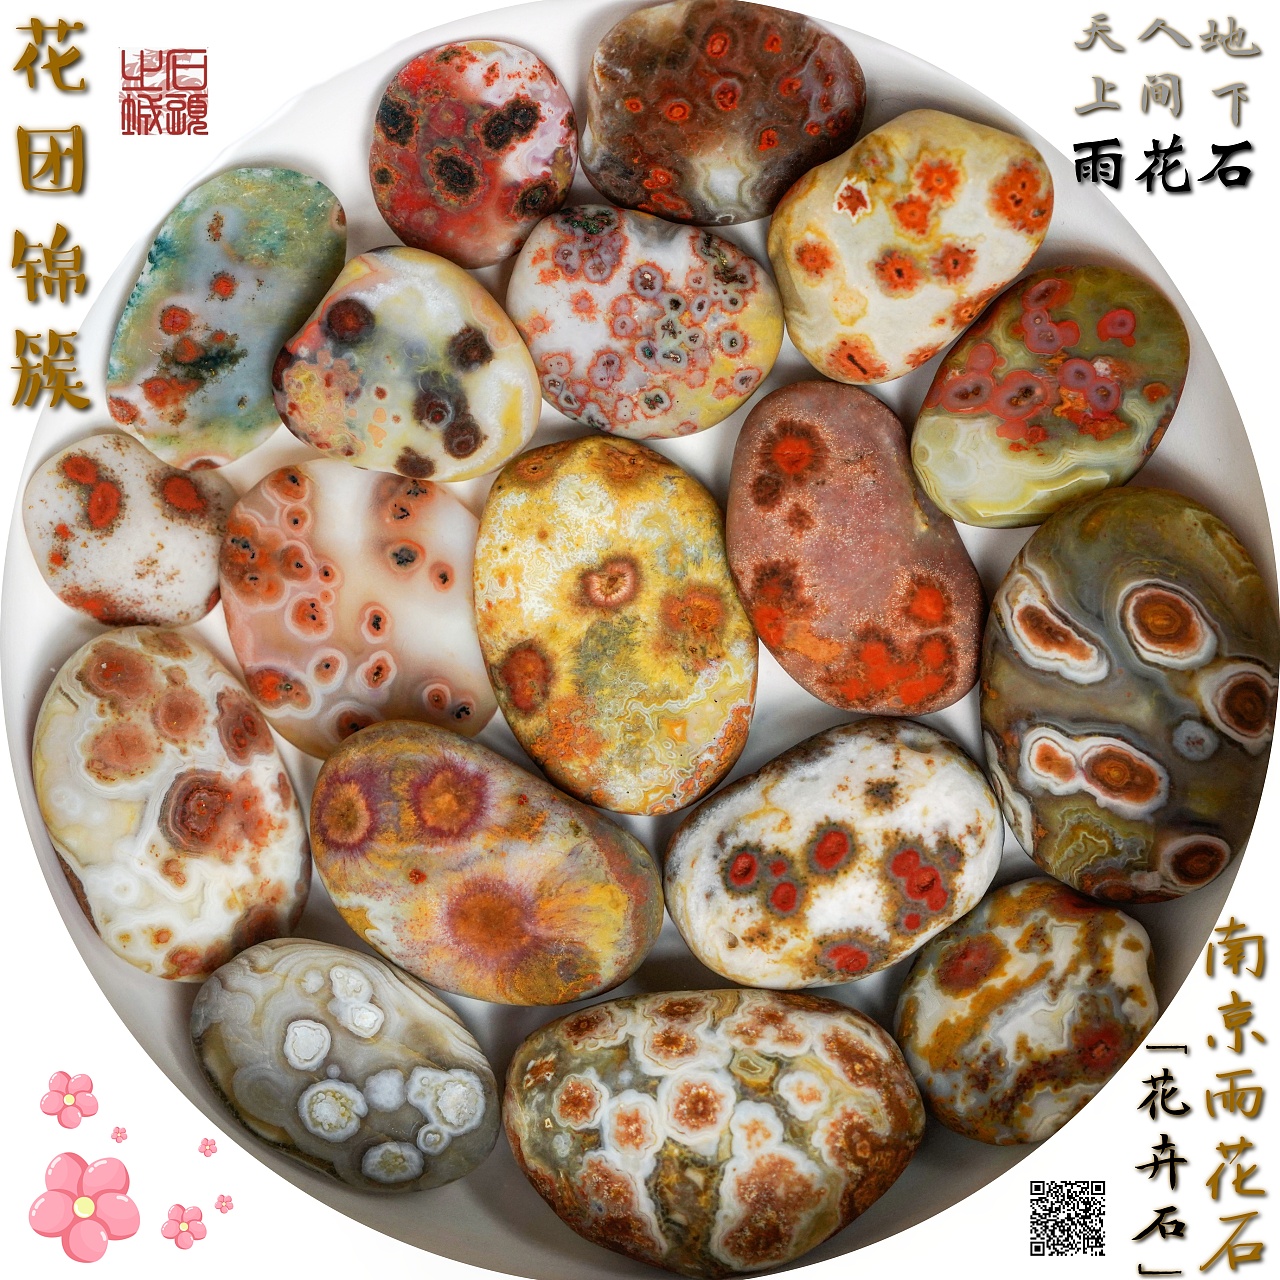 雨花石爱好者收藏图片一组-雨花石欣赏-南京雨花石鹅卵石厂家